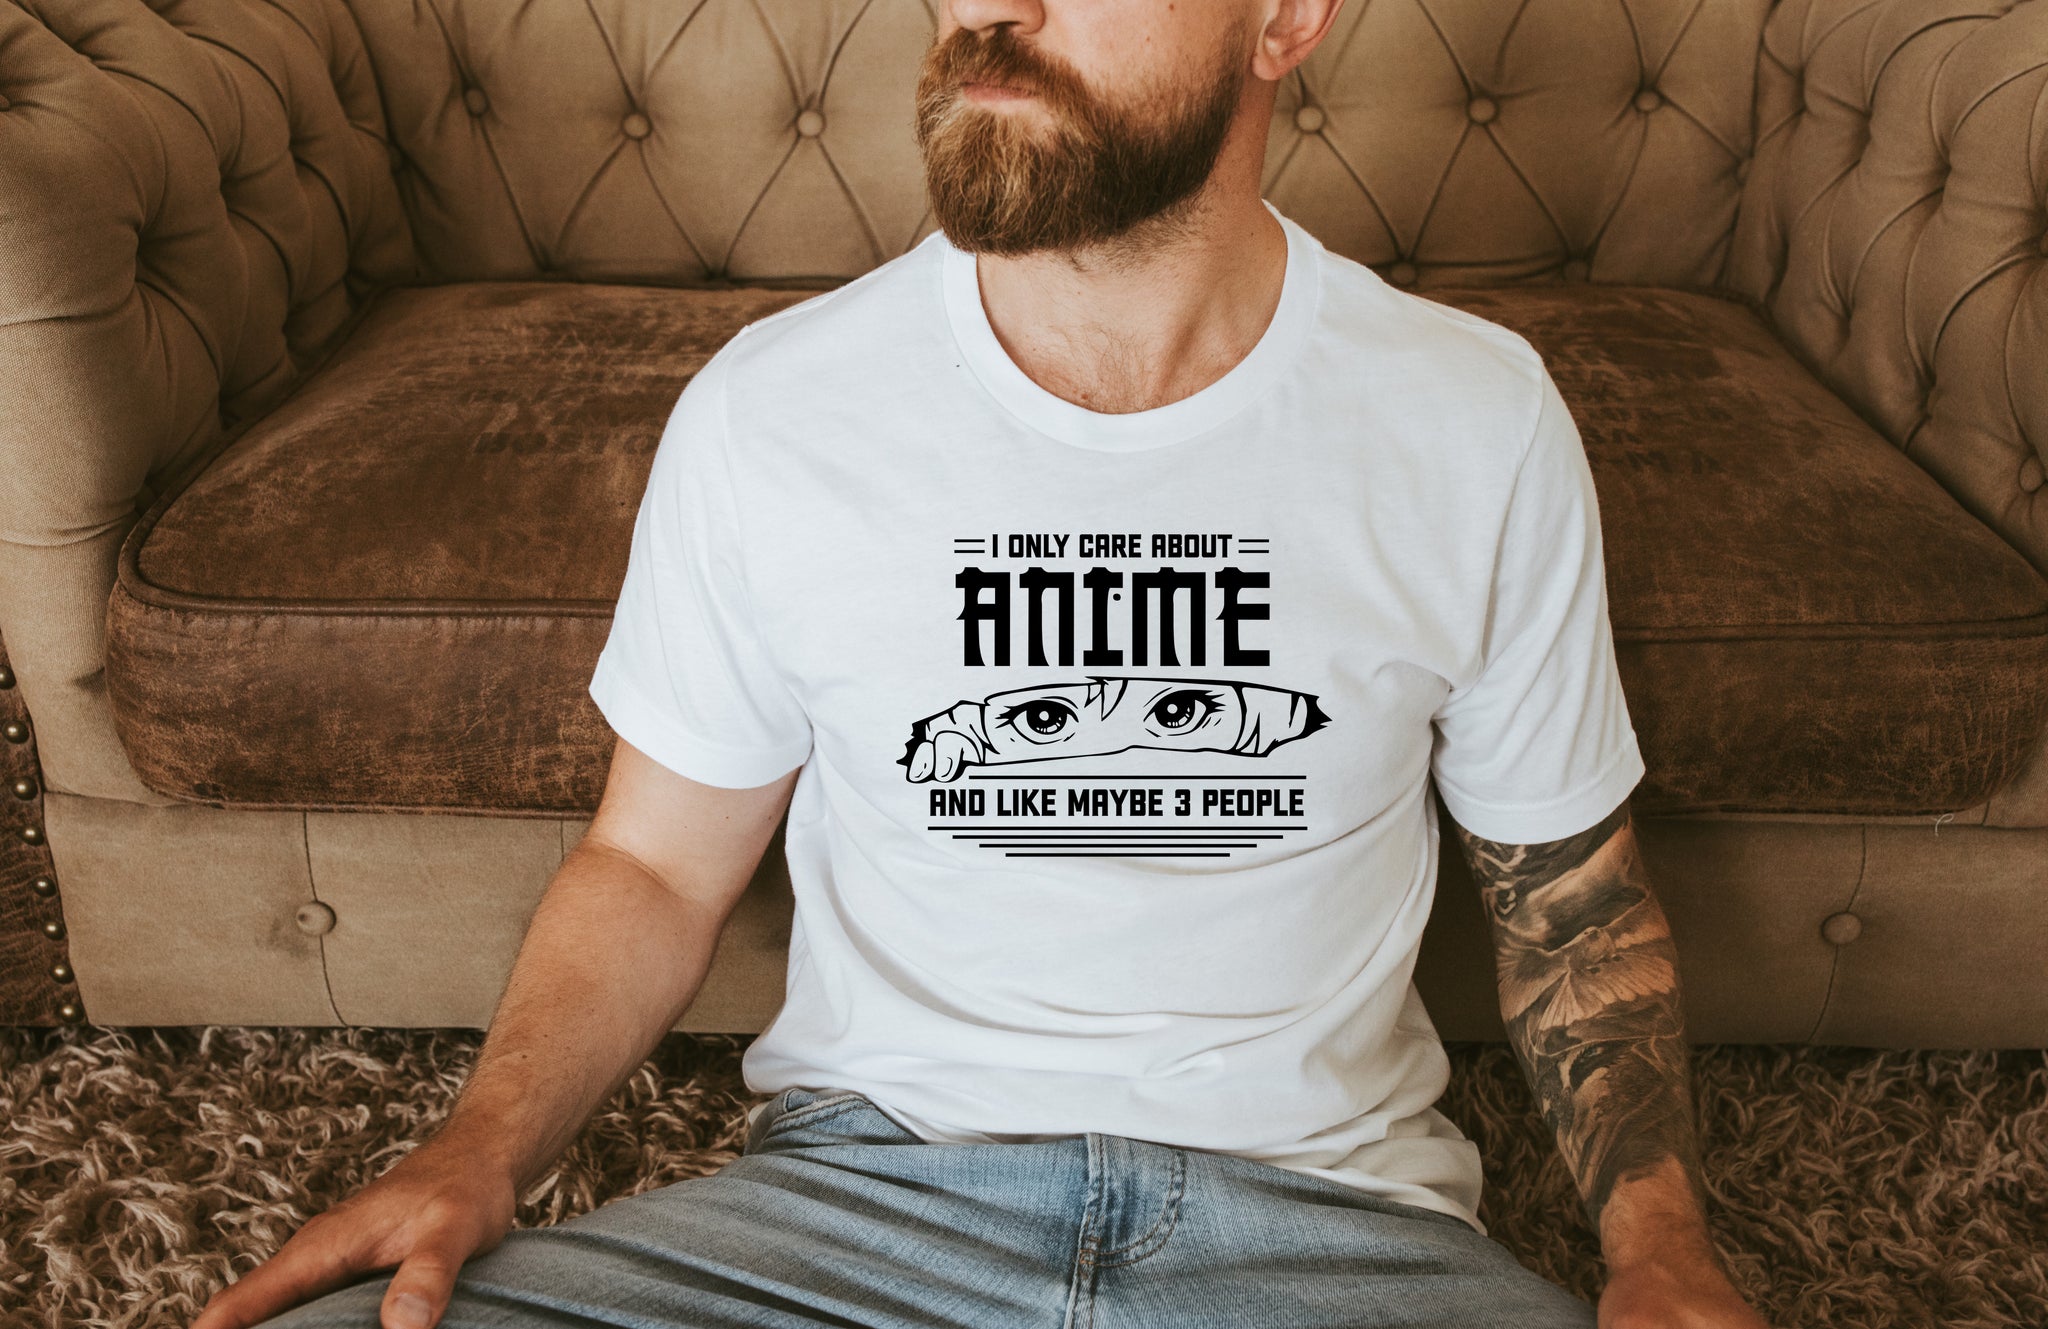 Kenma Kozume Shirt, haikyuu tshirt, anime shirt, Kenma Kozume, Haikyuu anime  shirt hoodie, sweatshirt, longsleeve tee